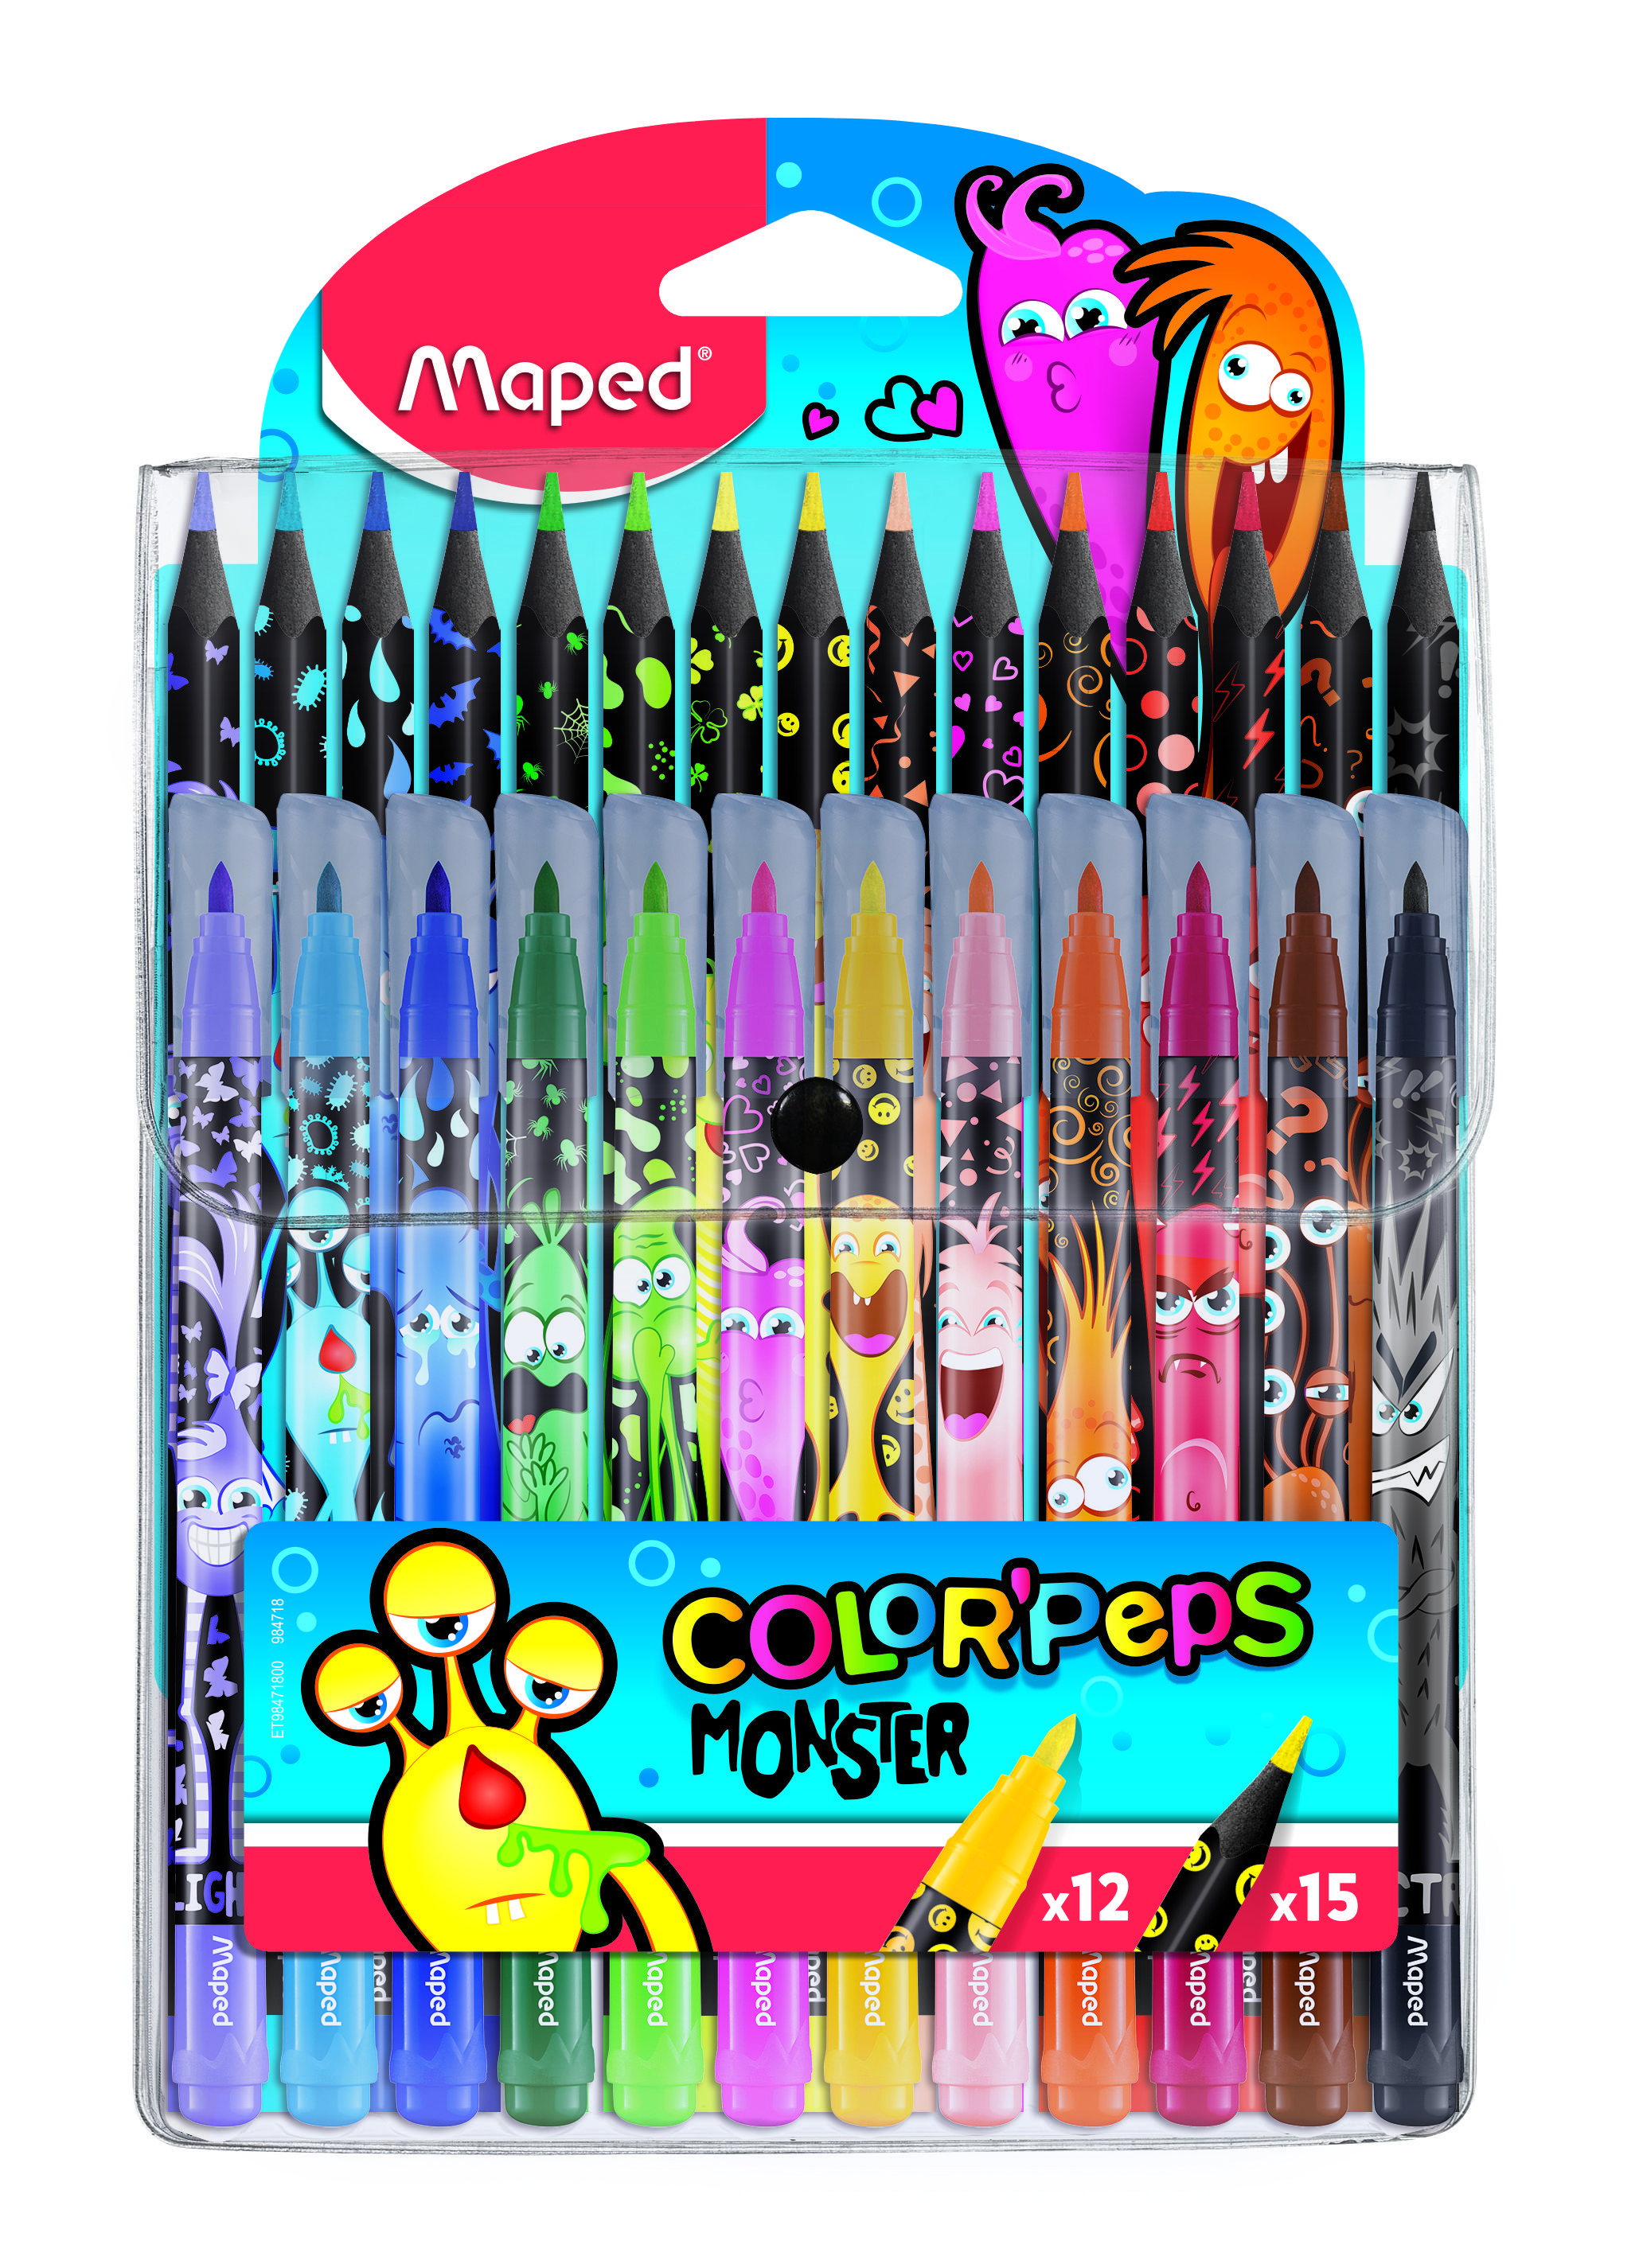 Набор для рисования MAPED COLOR'PEPS MONSTER 12 фломастеров, 15 пластиковых цветных карандашей, декорированный корпус, в футляре оптом